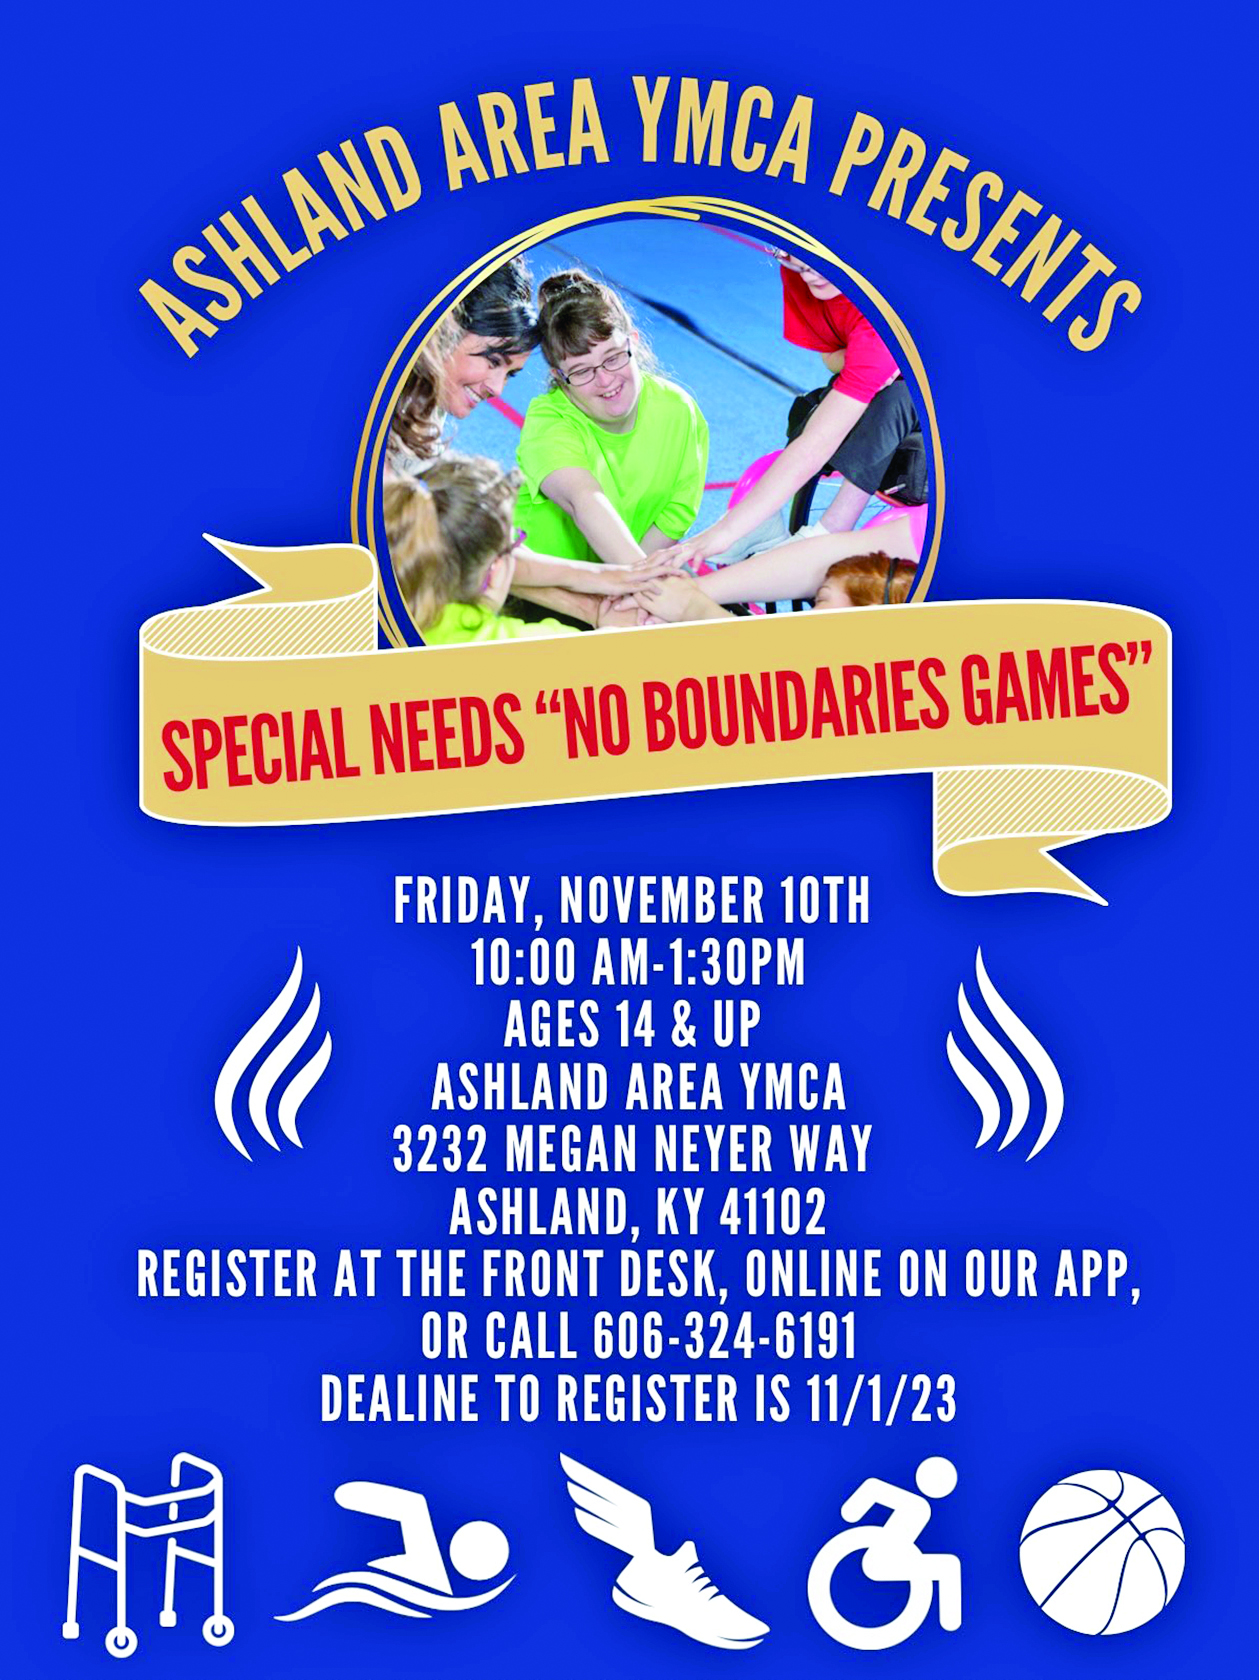 Ashland Area YMCA to Host Special Needs “No Boundaries Games”